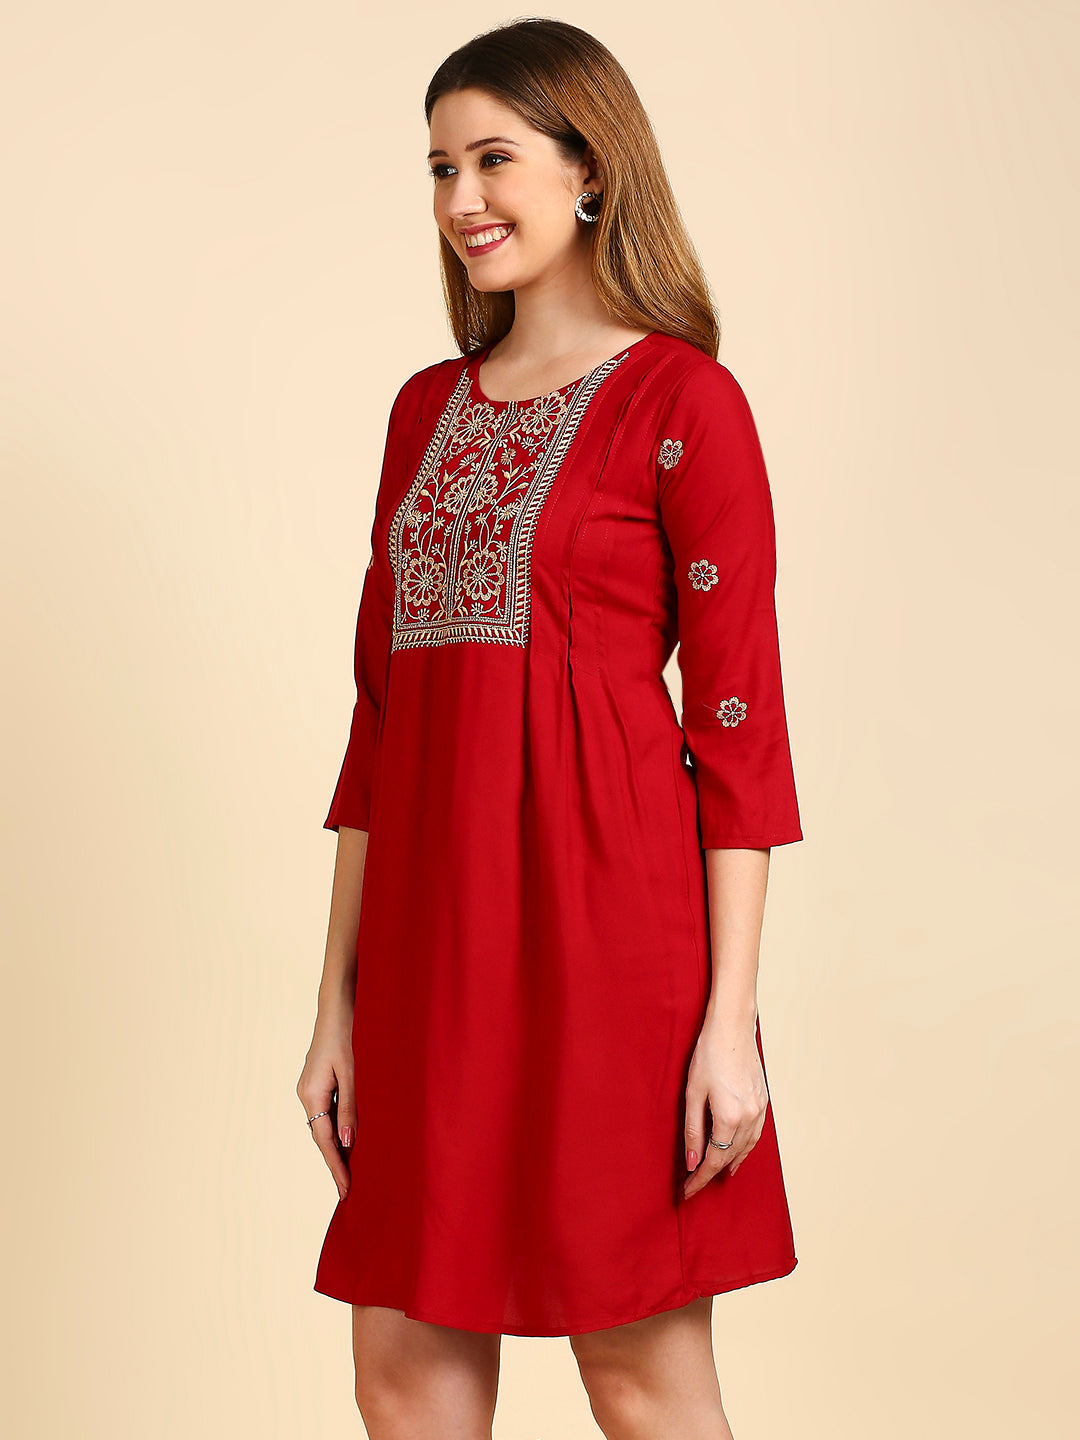 Women's's Maroon Ethnic Motifs A-Line Dress